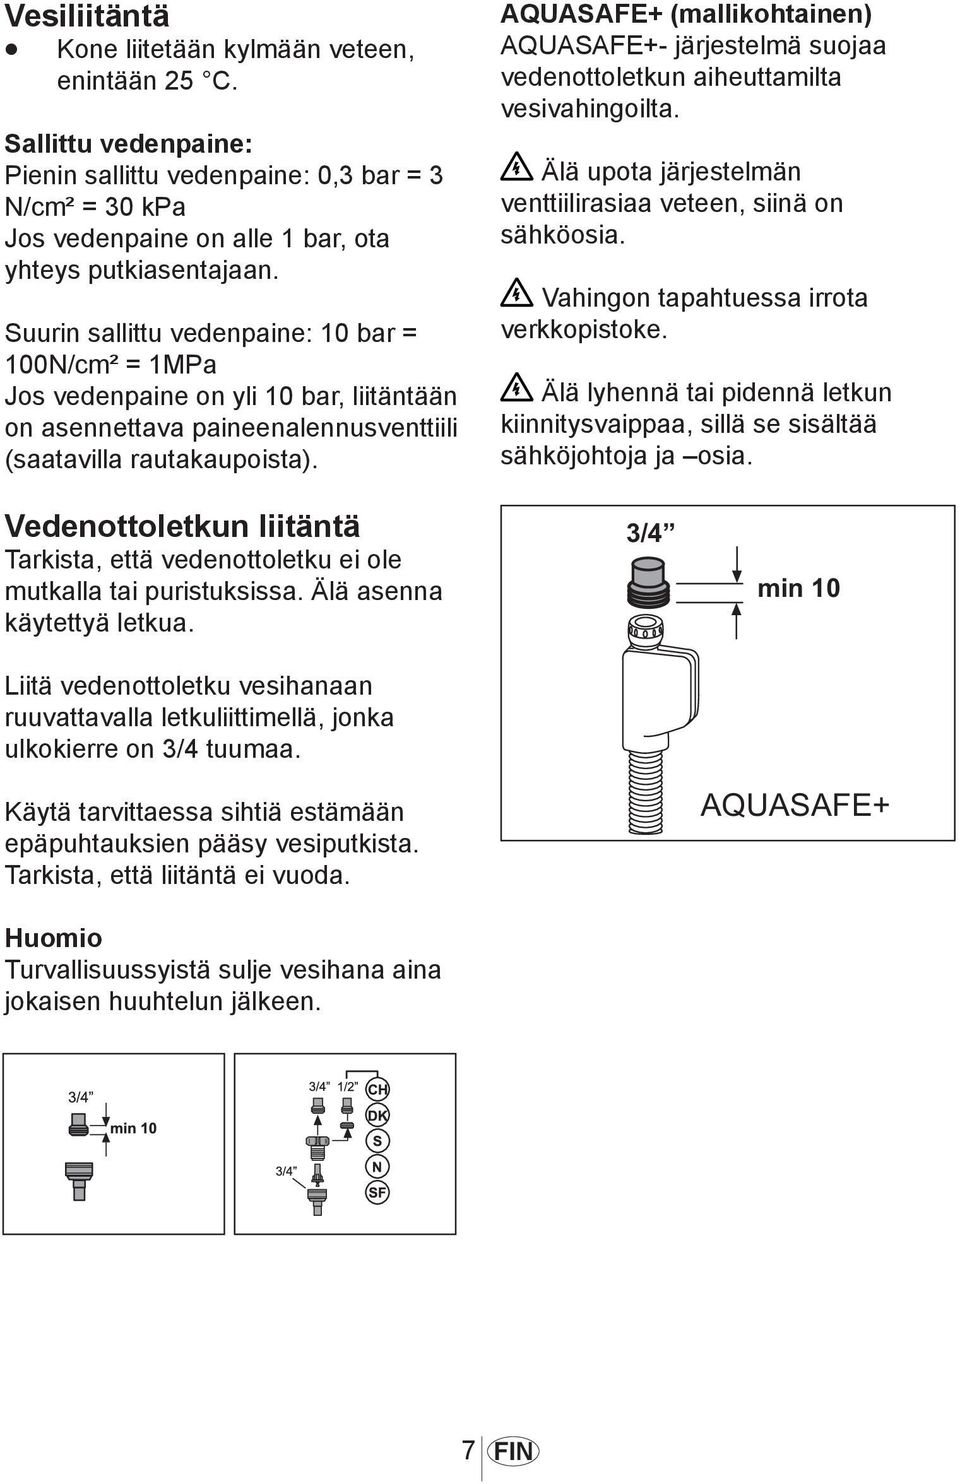 AQUASAFE+ AQUASAFE+- järjestelmä suojaa vedenottoletkun aiheuttamilta vesivahingoilta. Älä upota järjestelmän venttiilirasiaa veteen, siinä on sähköosia. Vahingon tapahtuessa irrota verkkopistoke.